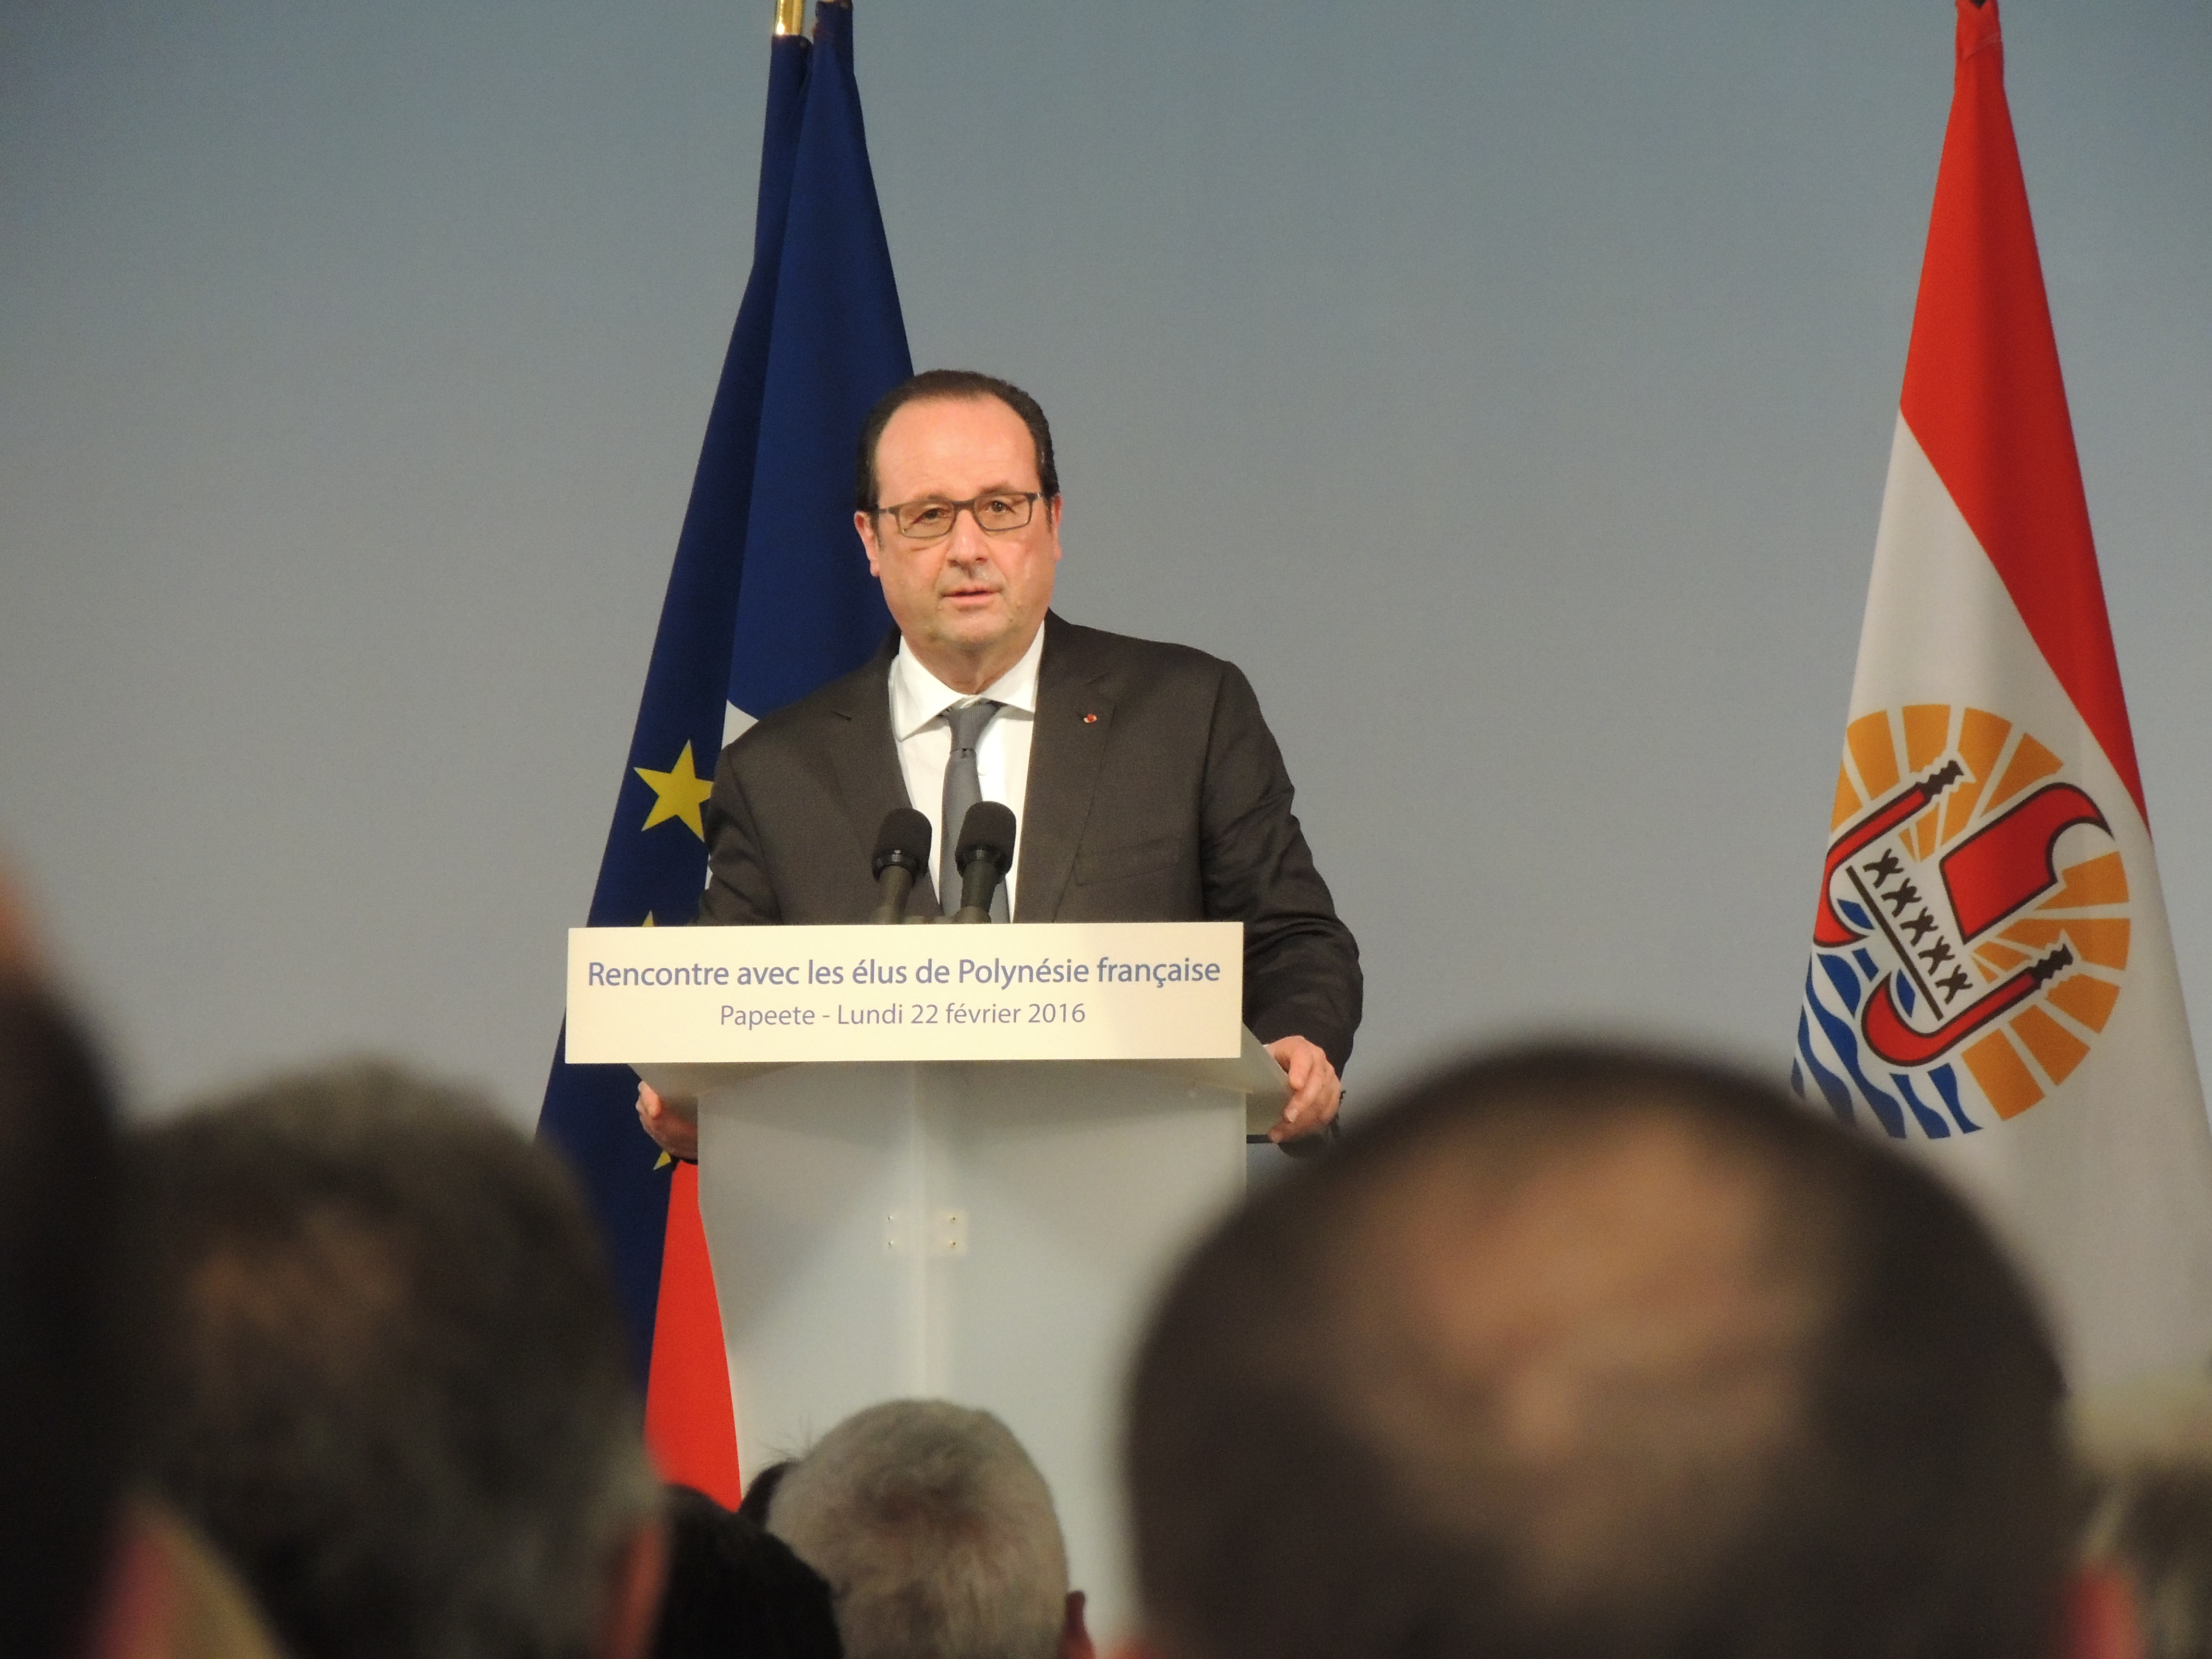 Discours de François Hollande devant les élus de la Polynésie française, pendant lequel il reconnait les conséquences des essais nucléaires ©Tahiti-infos